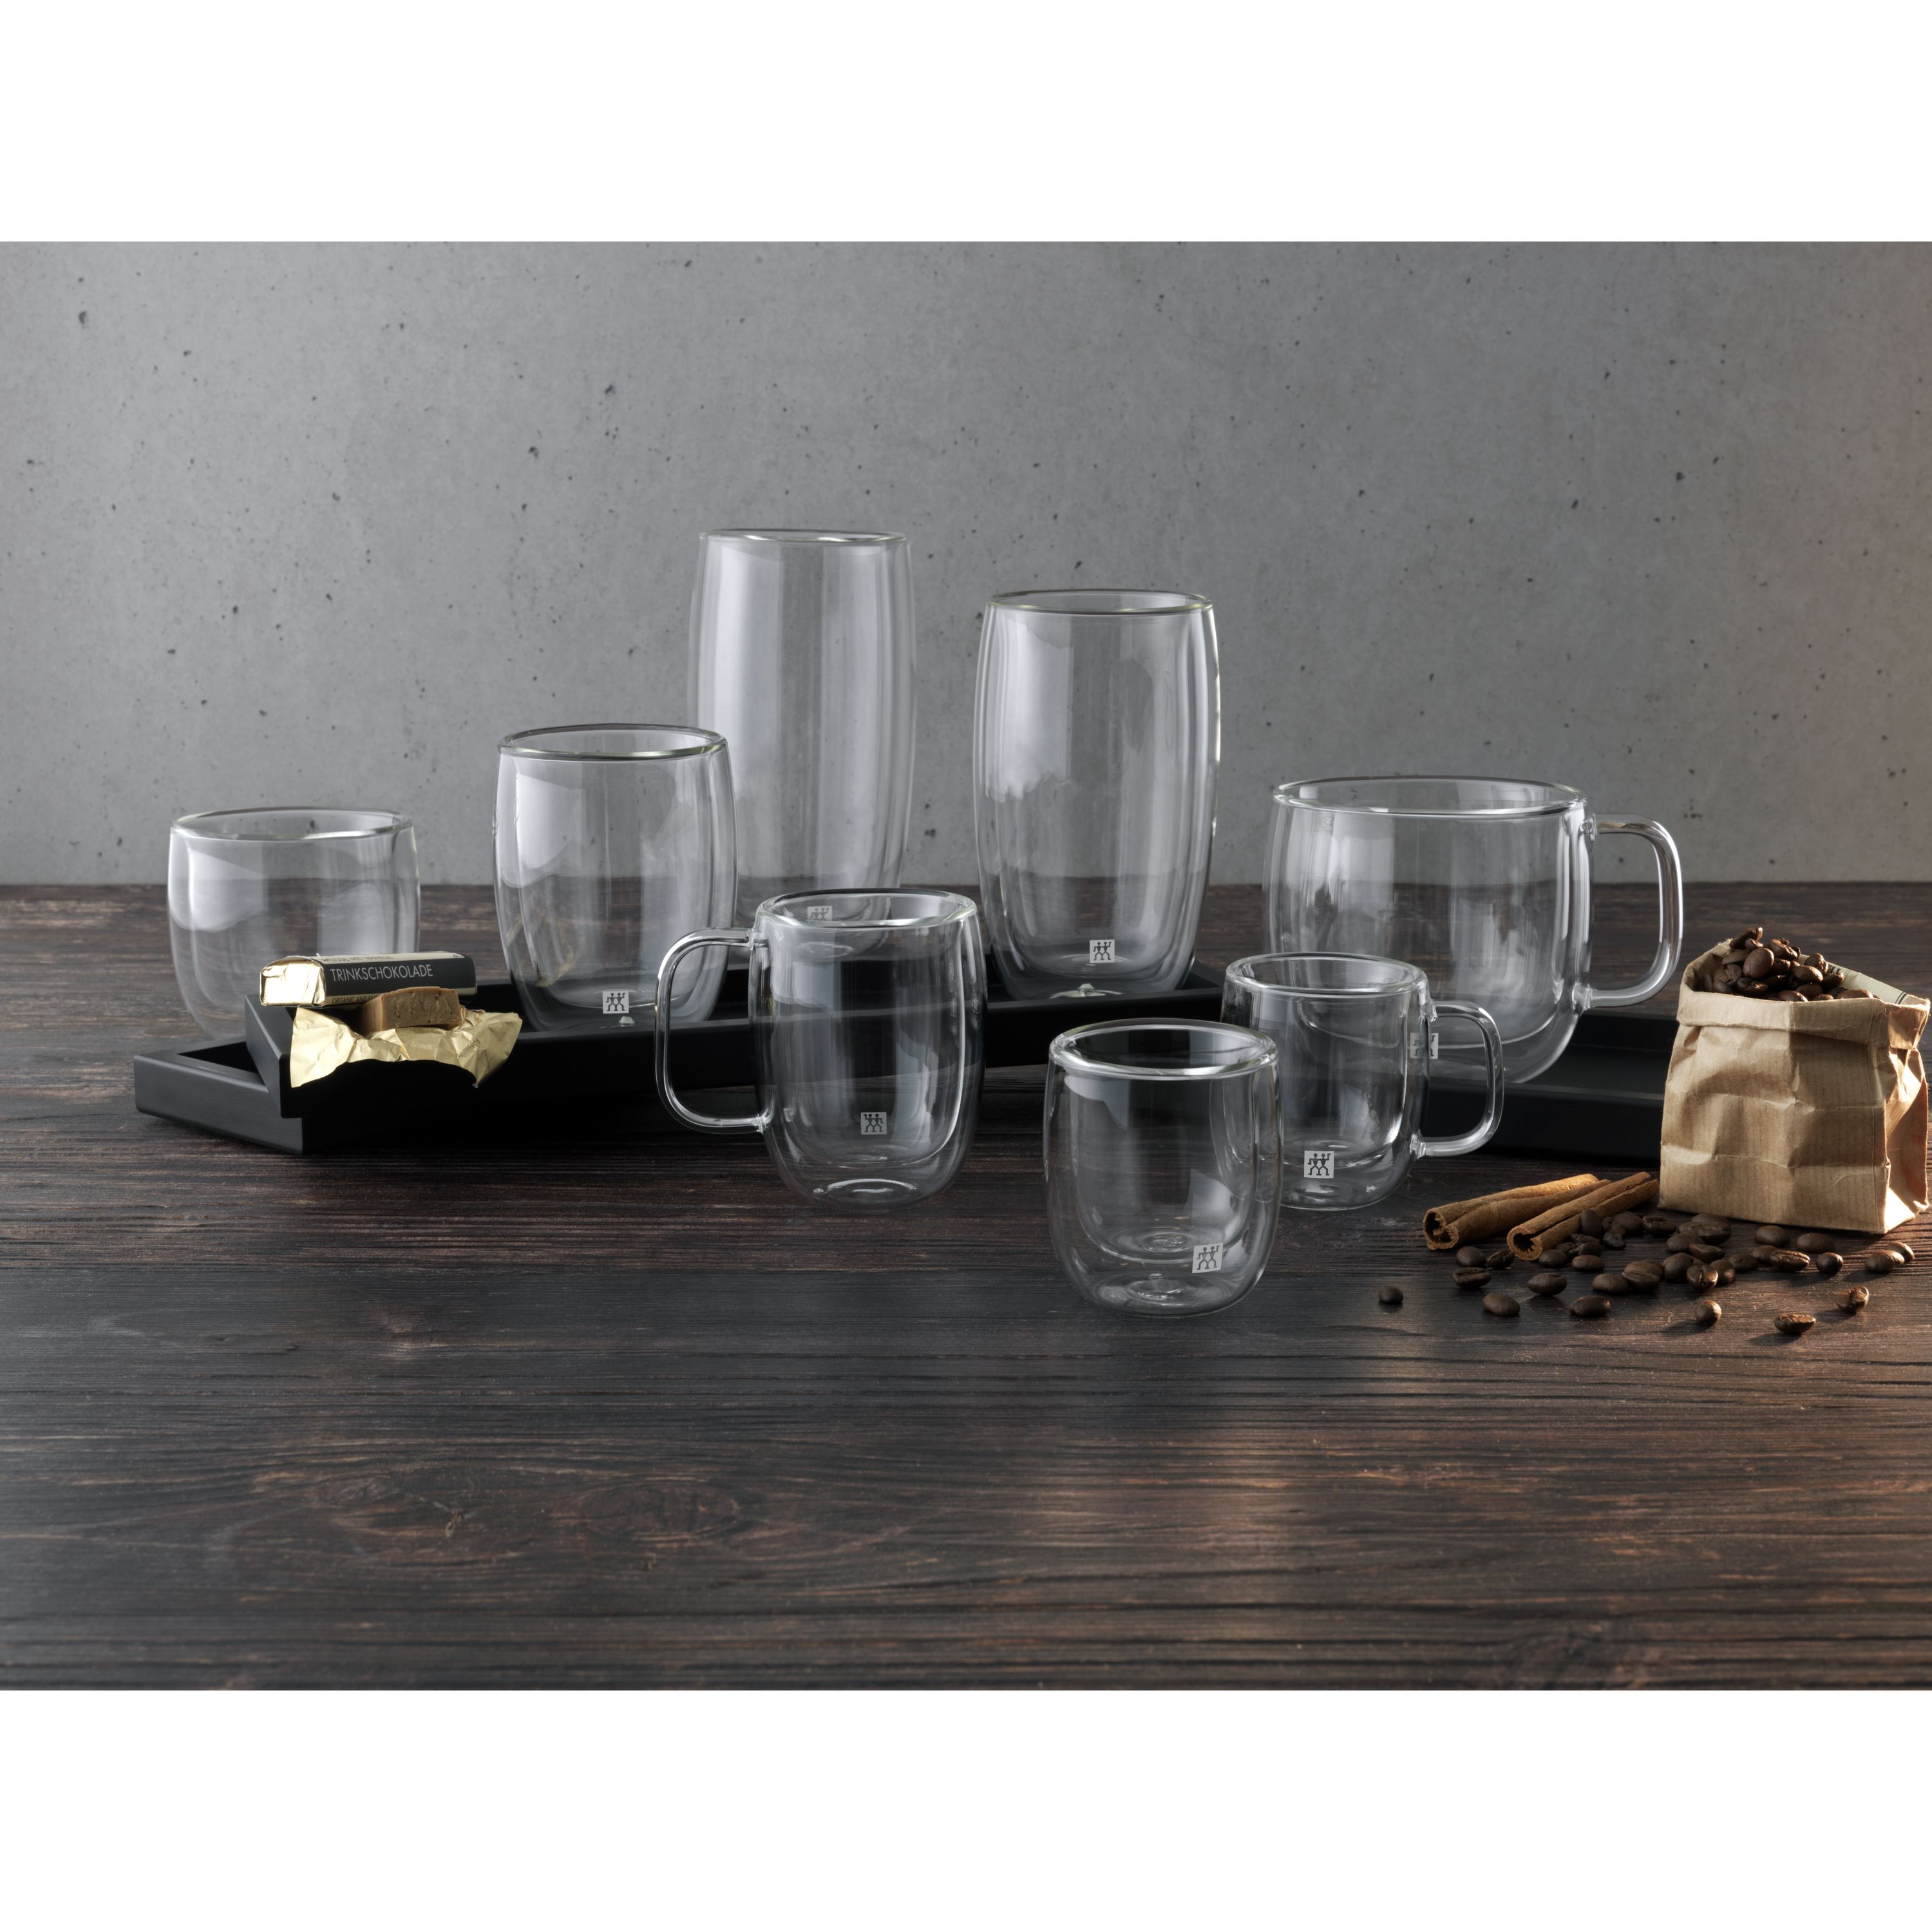  Horwood JDG35 275 ml Latte Glass, Set of 2 : Home & Kitchen